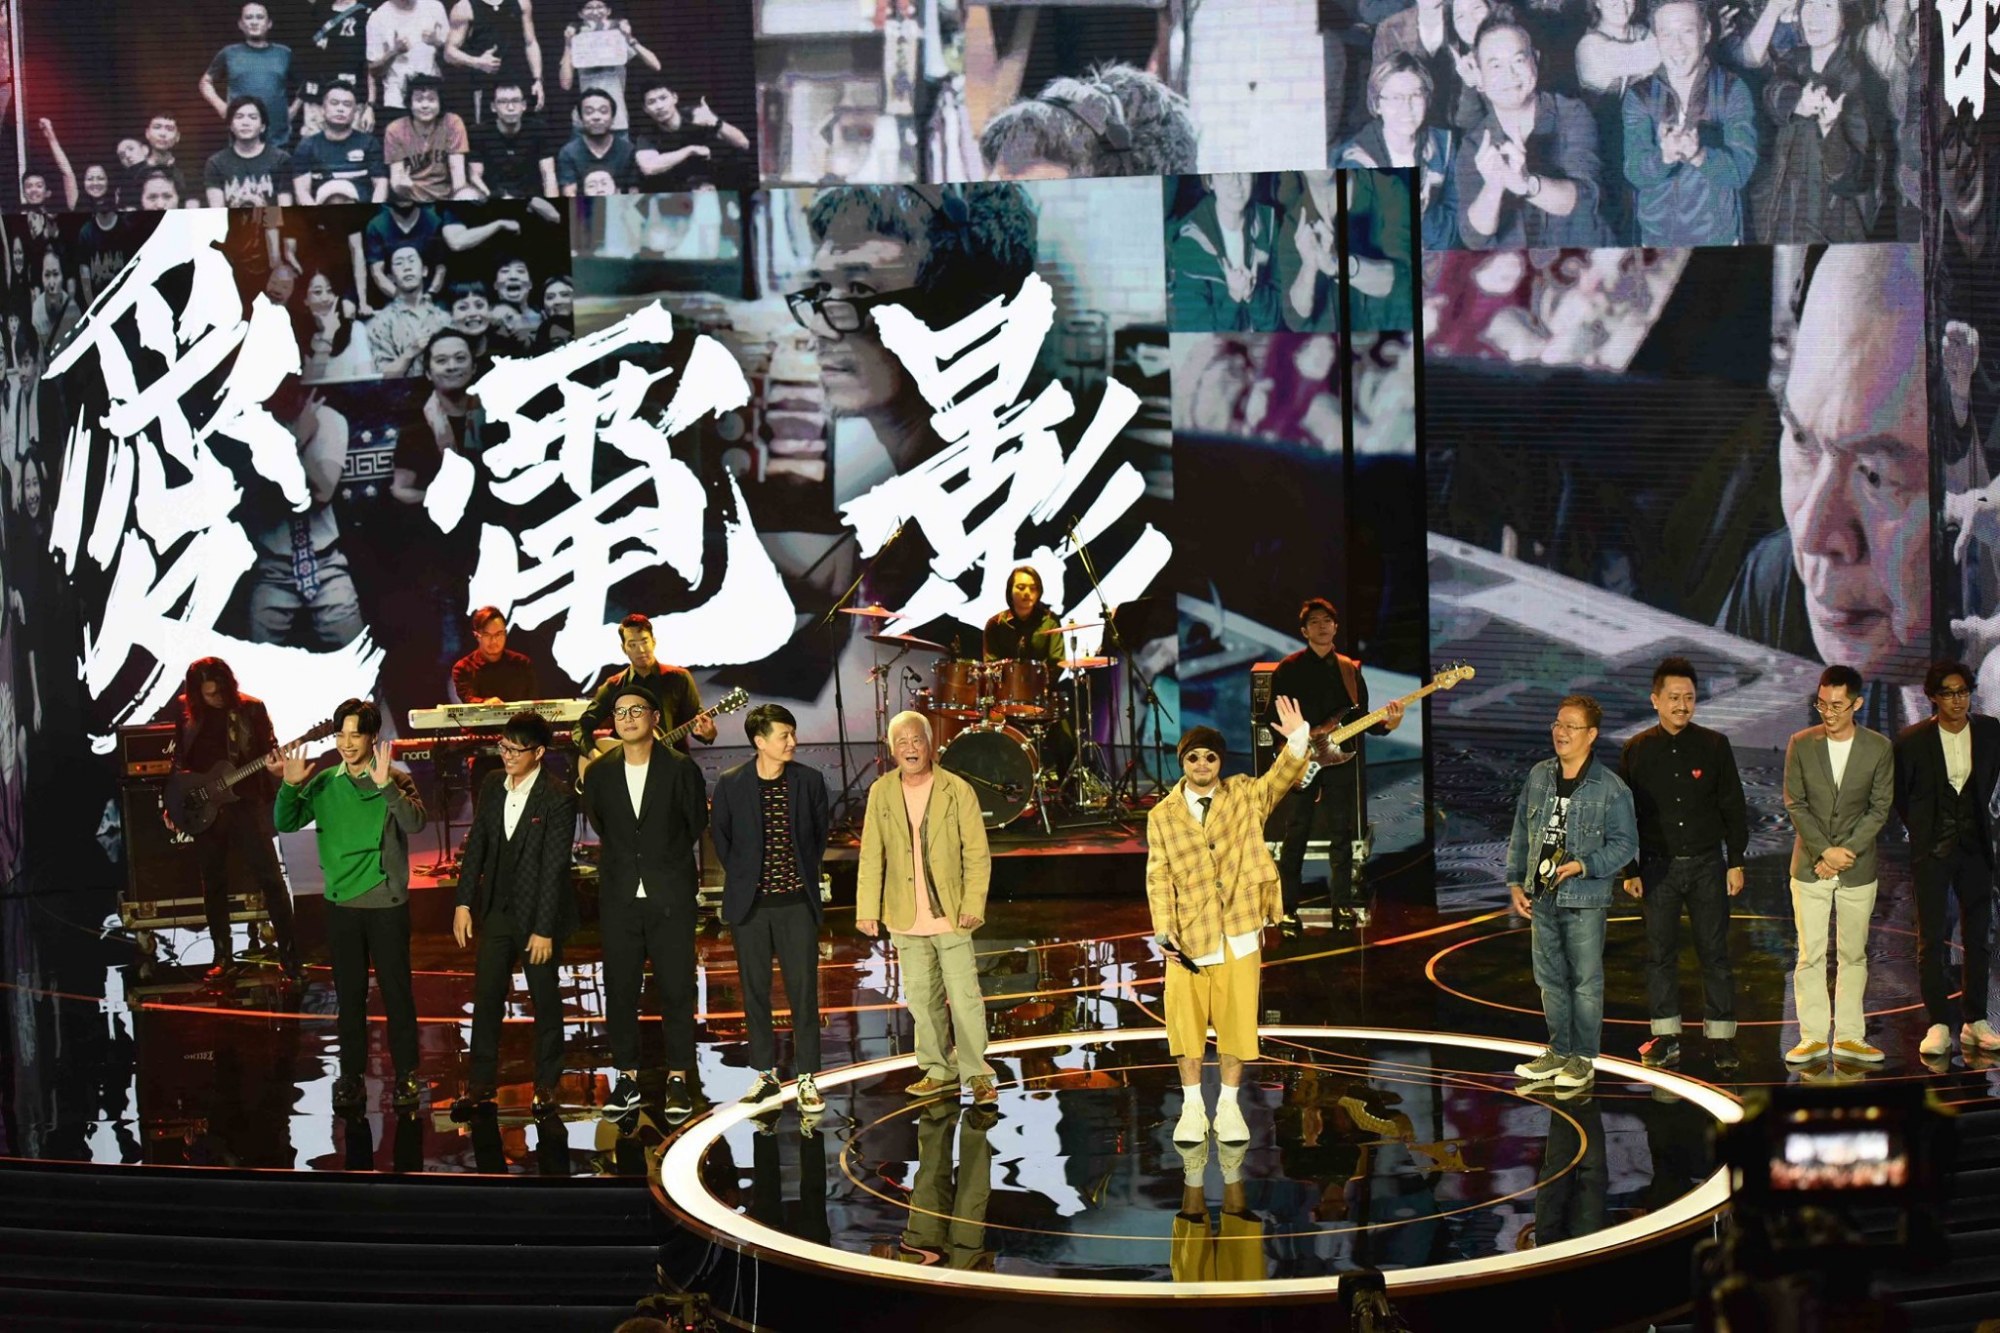 浅谈第57届台湾电影金马奖典礼:致电影,致创作,致生活